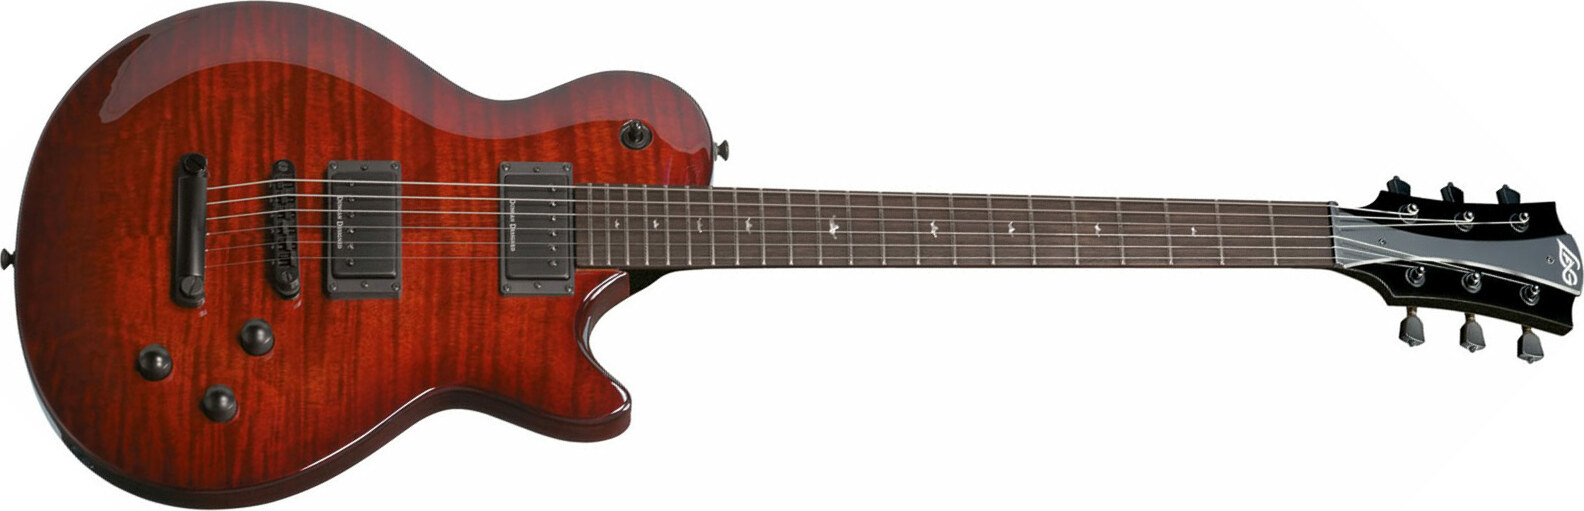 Lag Imperator 200 Ops Hh Ht Rw - Old Port Shadow - Enkel gesneden elektrische gitaar - Main picture